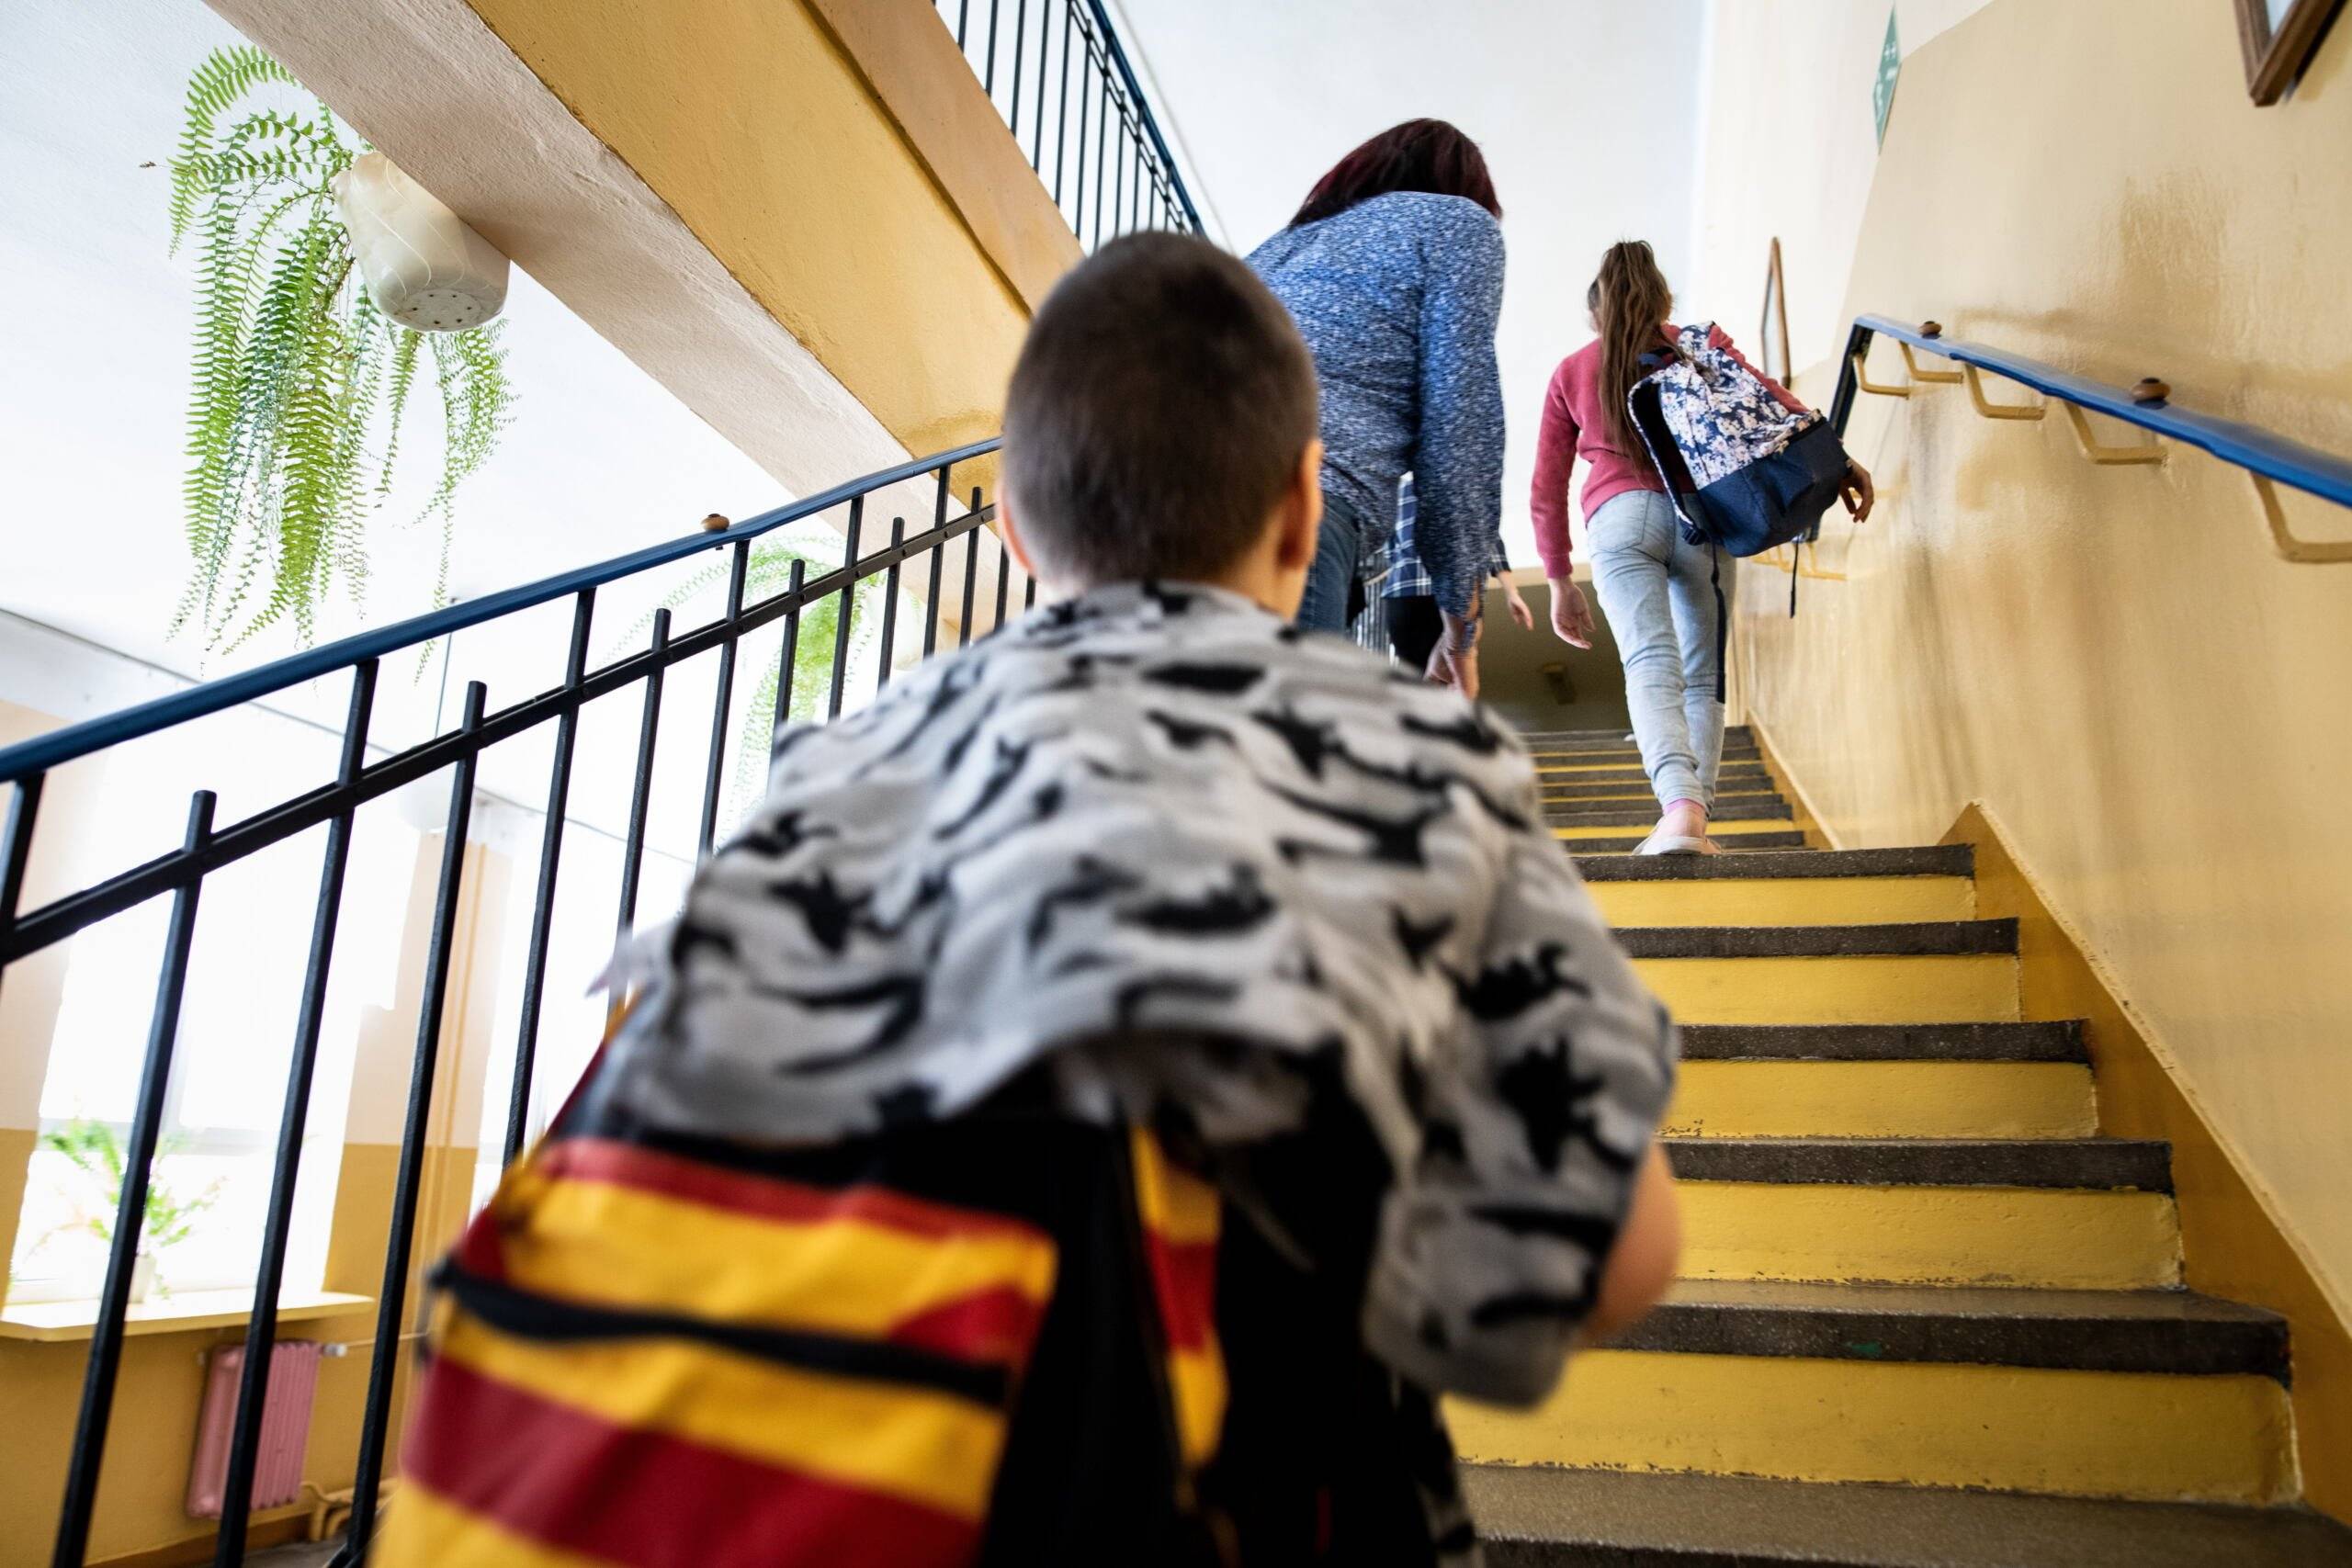 Szkoła w Bezwoli ma być zlikwidowana. Na zdjęciu chłopczyk wczhodzi po schodach, przed nim kobieta z zasłoniętą głową prowadzi córkę